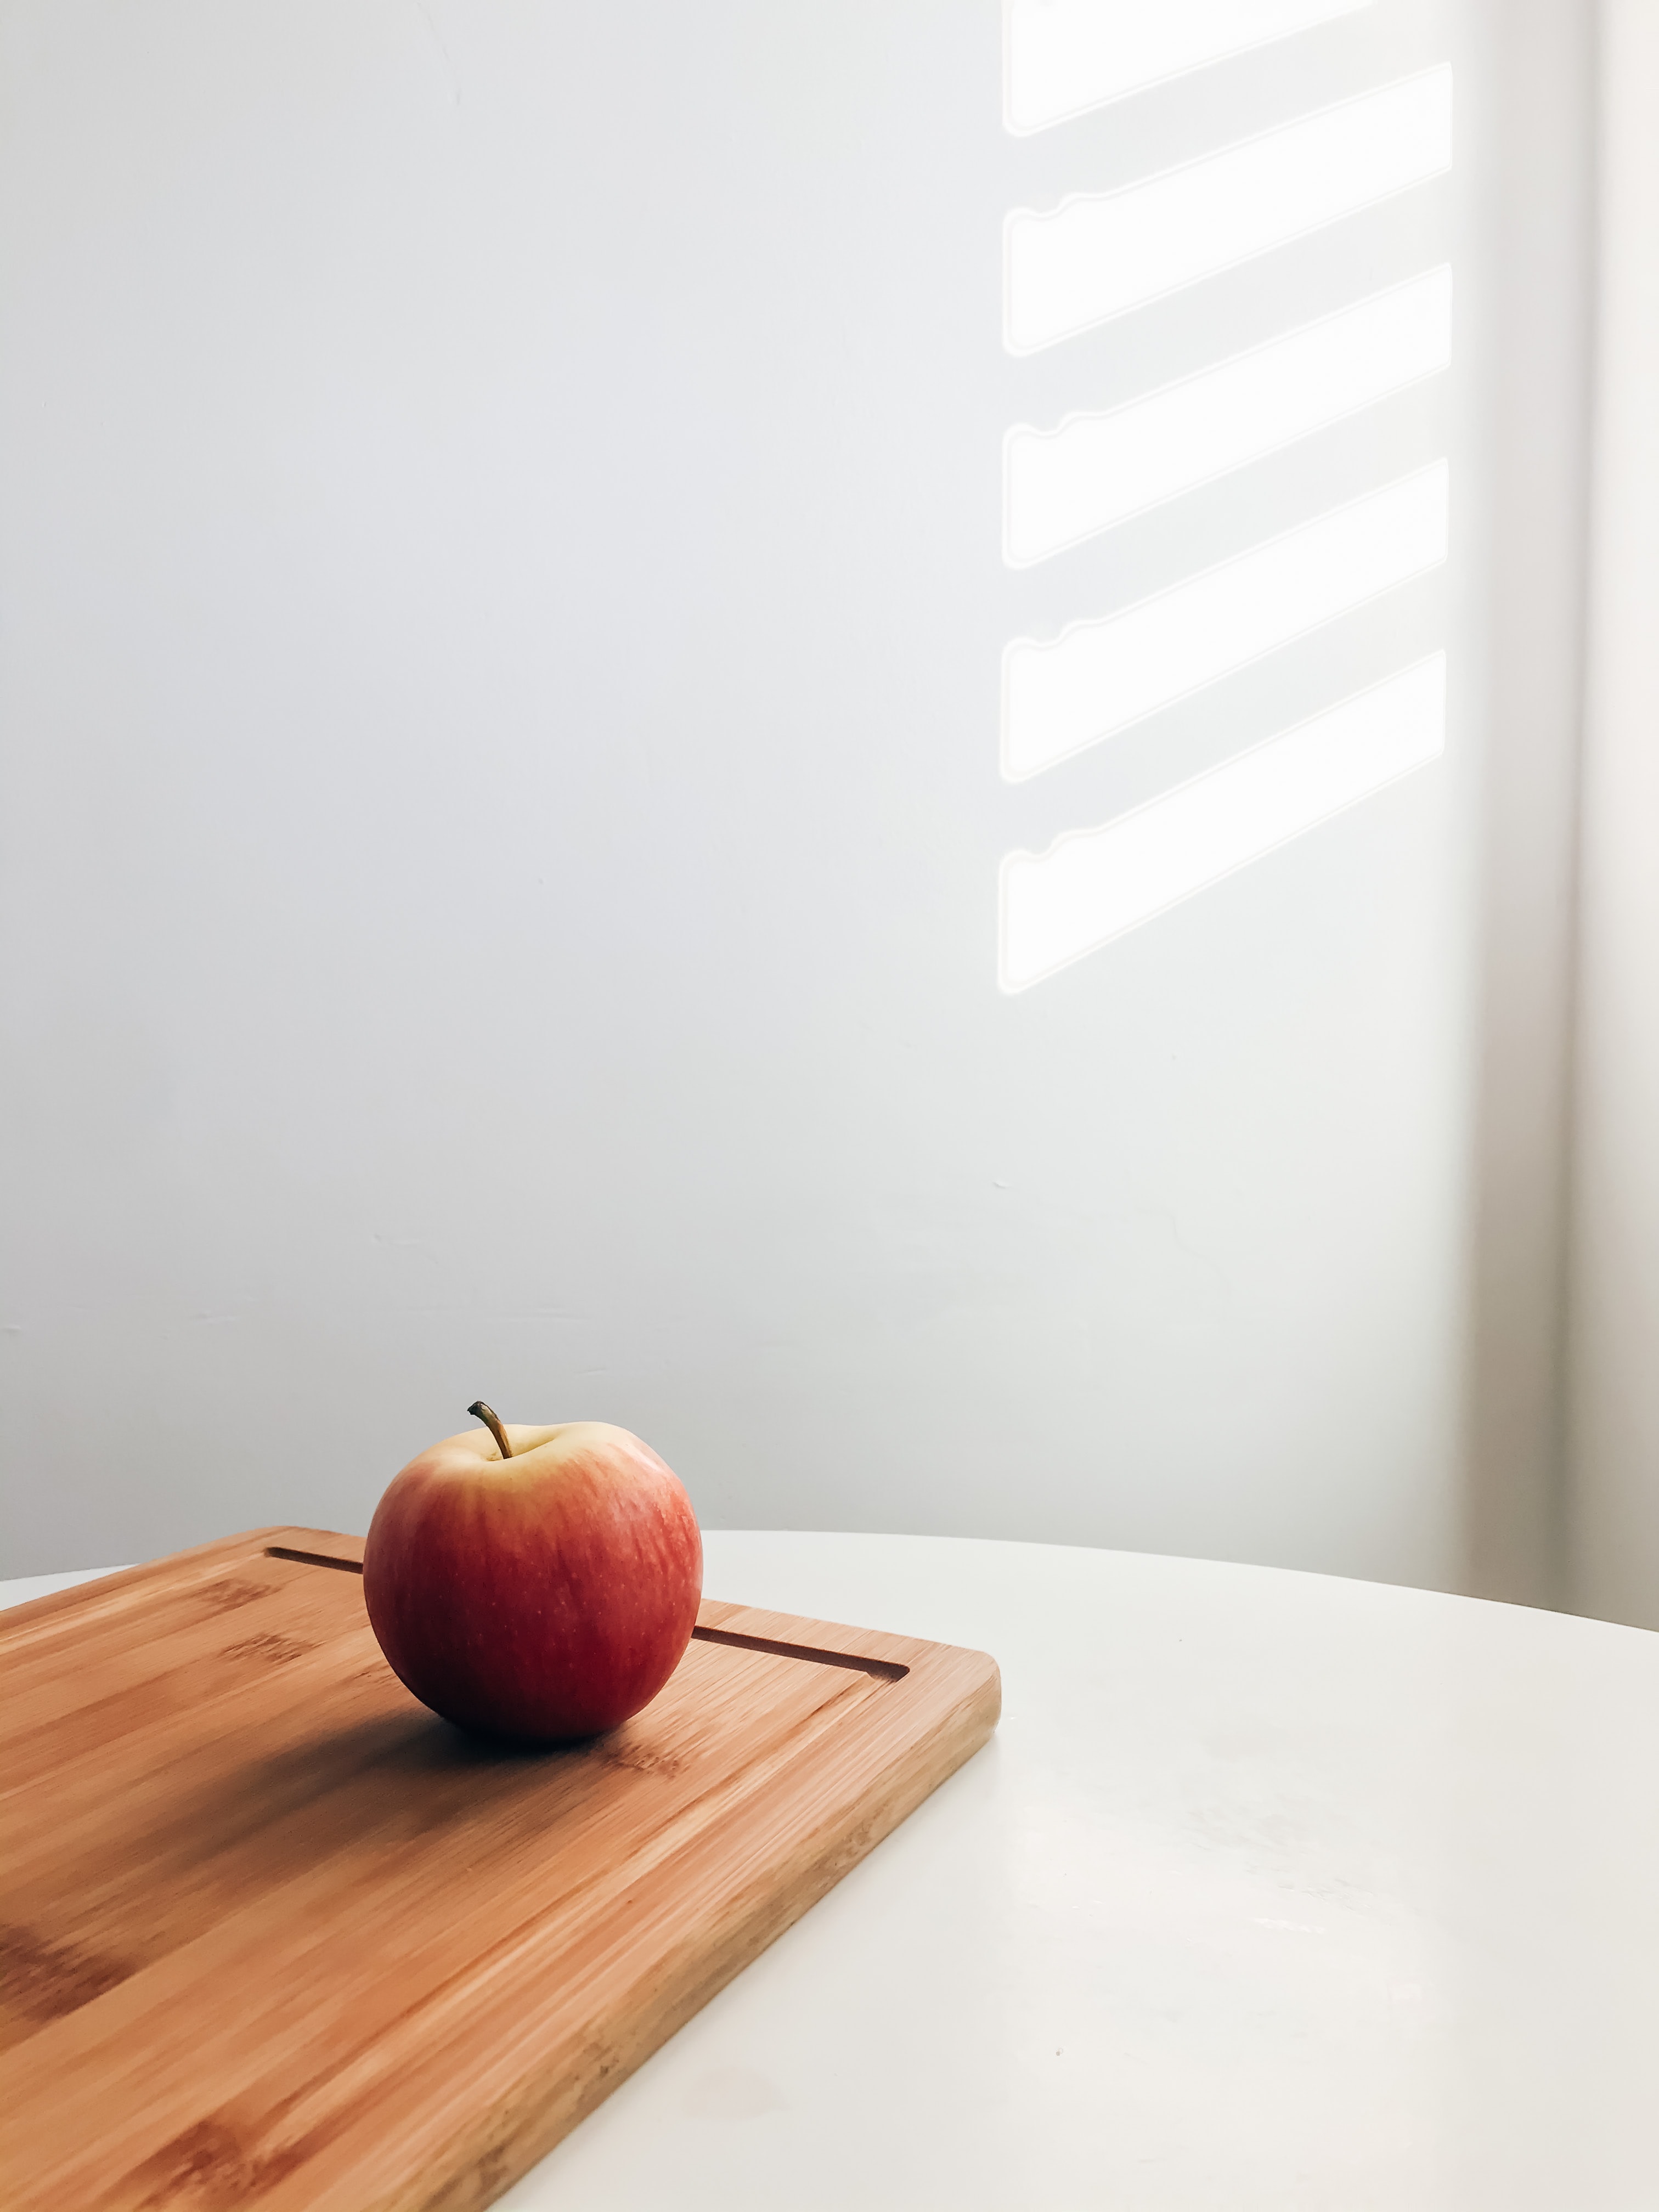 food, apple, minimalism, table, board